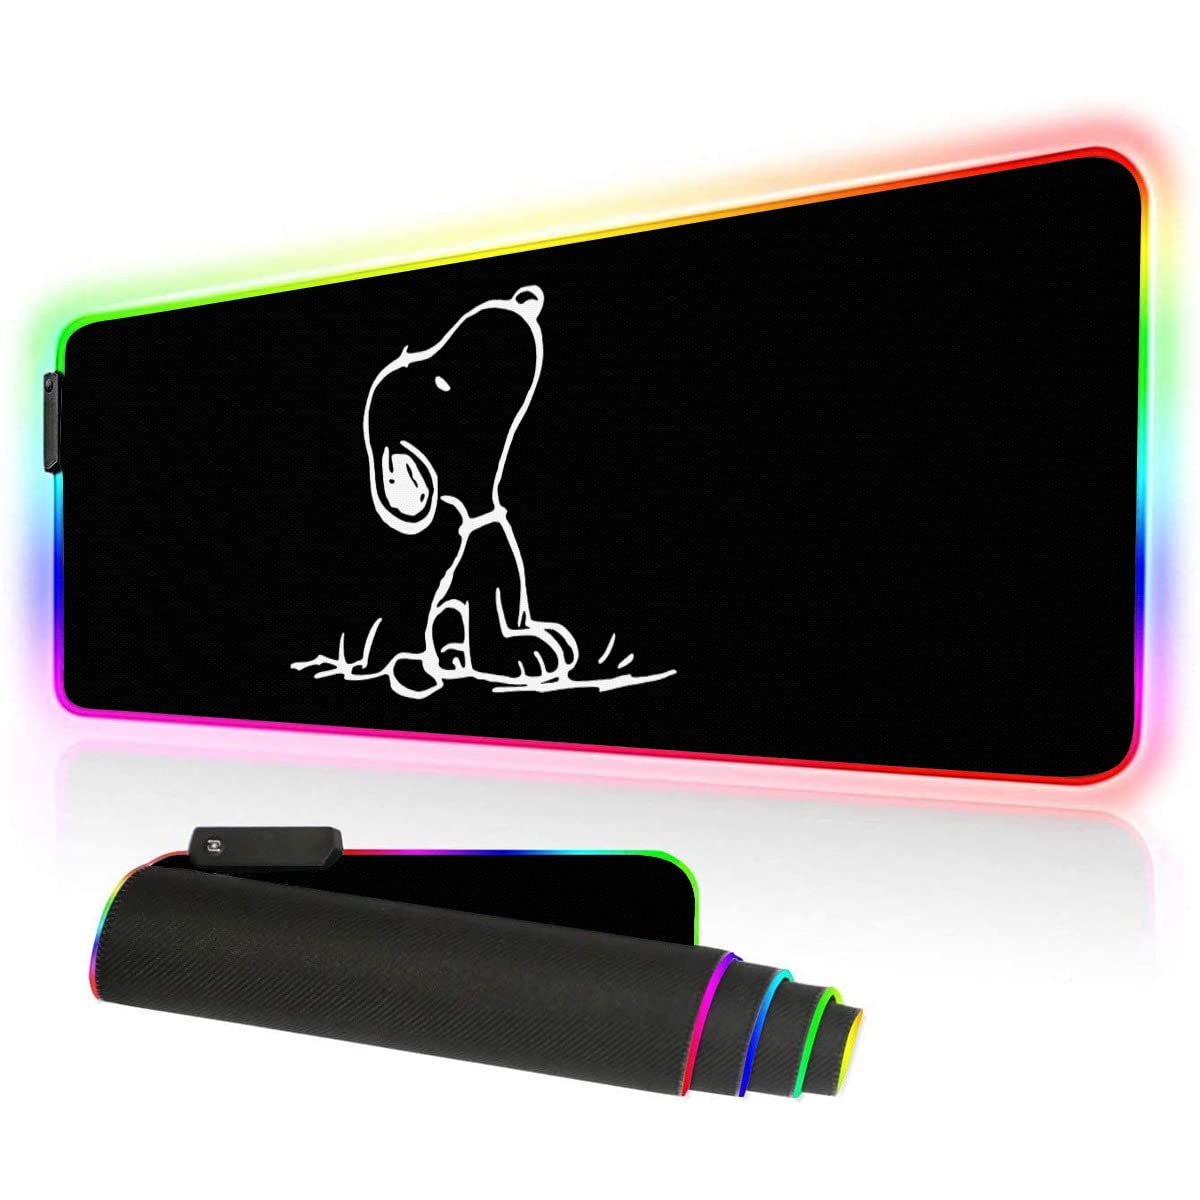 ゲーミングマウスパッド ピーナッツ スヌーピー デスクマット キーボードパッド マウスパッド 光学式 発光マウスパッド 大型 RGBモードカ